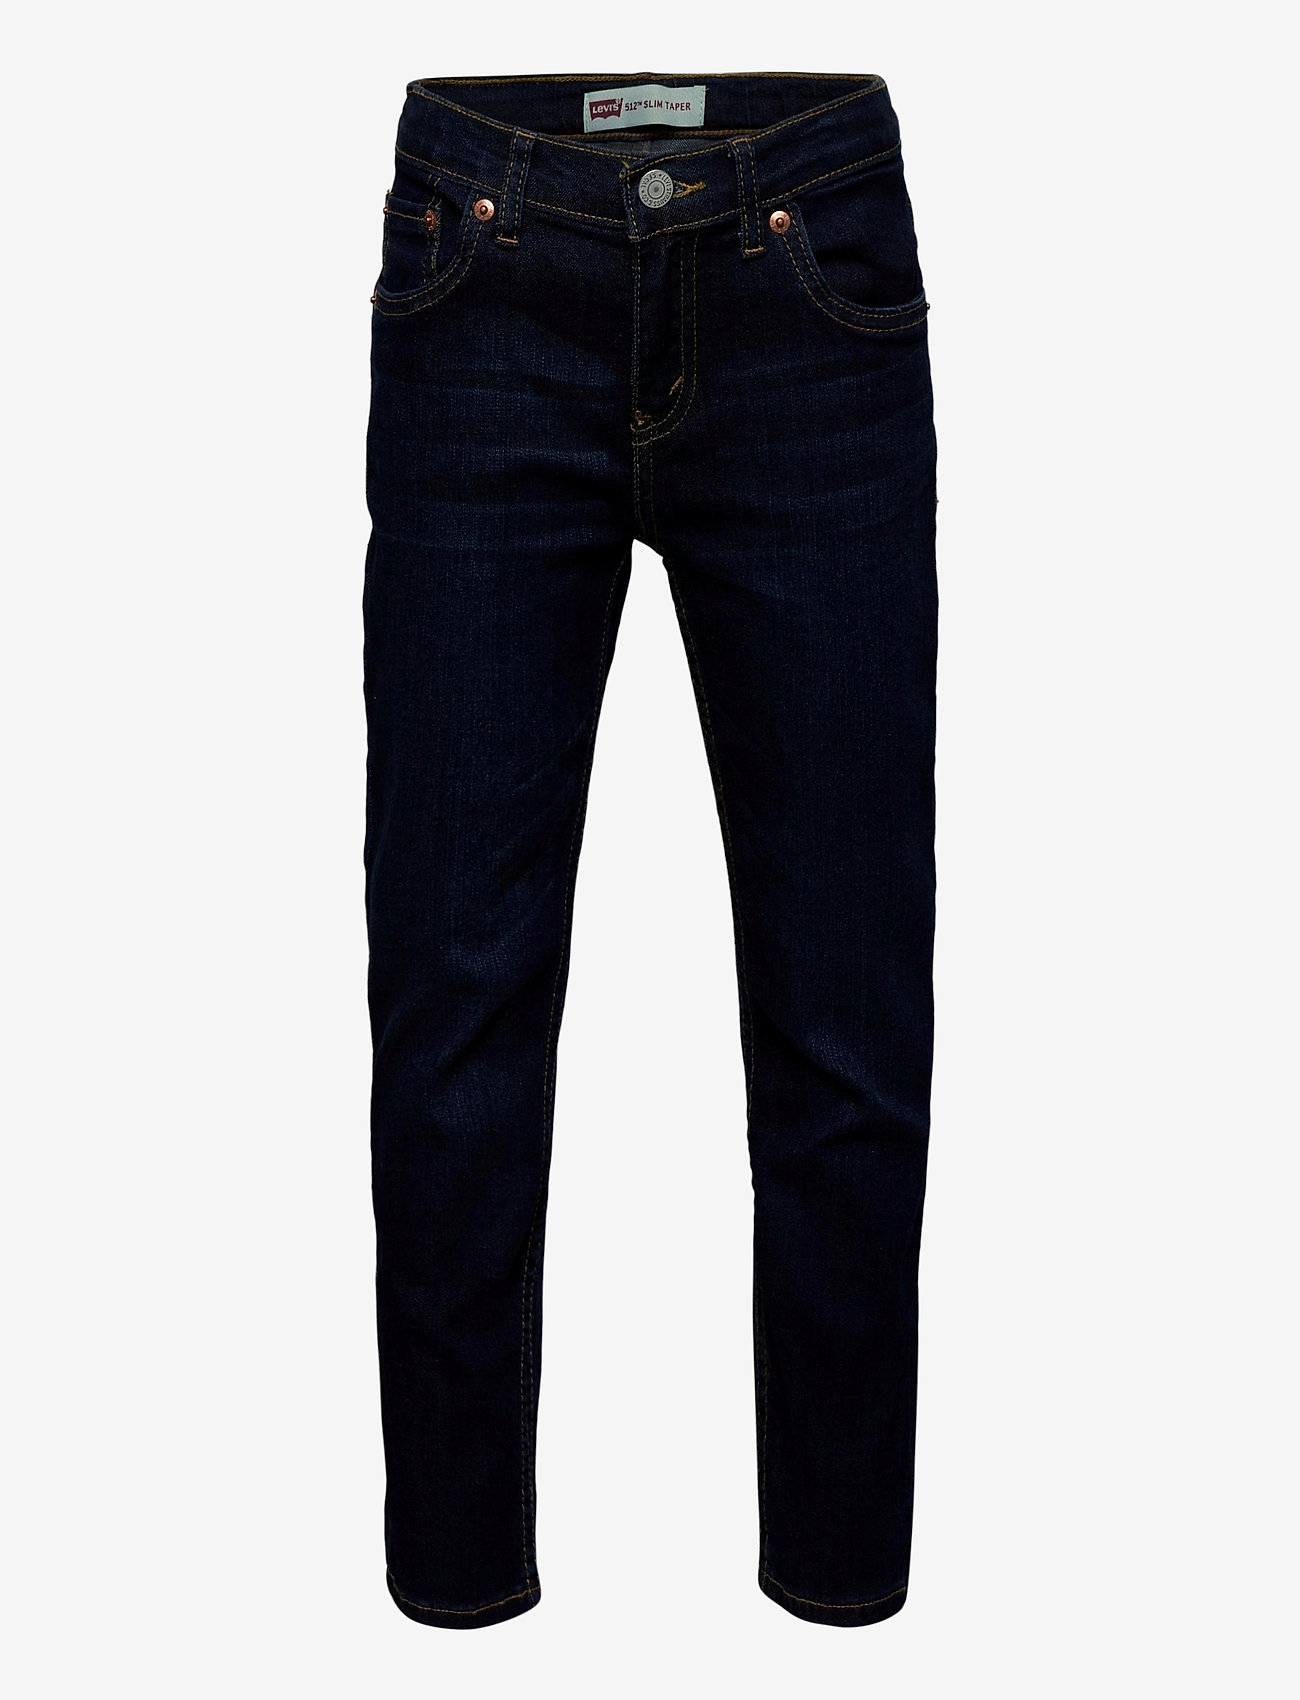 Levi's - Levi's® 512™ Slim Taper Fit Jeans - skinny jeans - hydra - 0